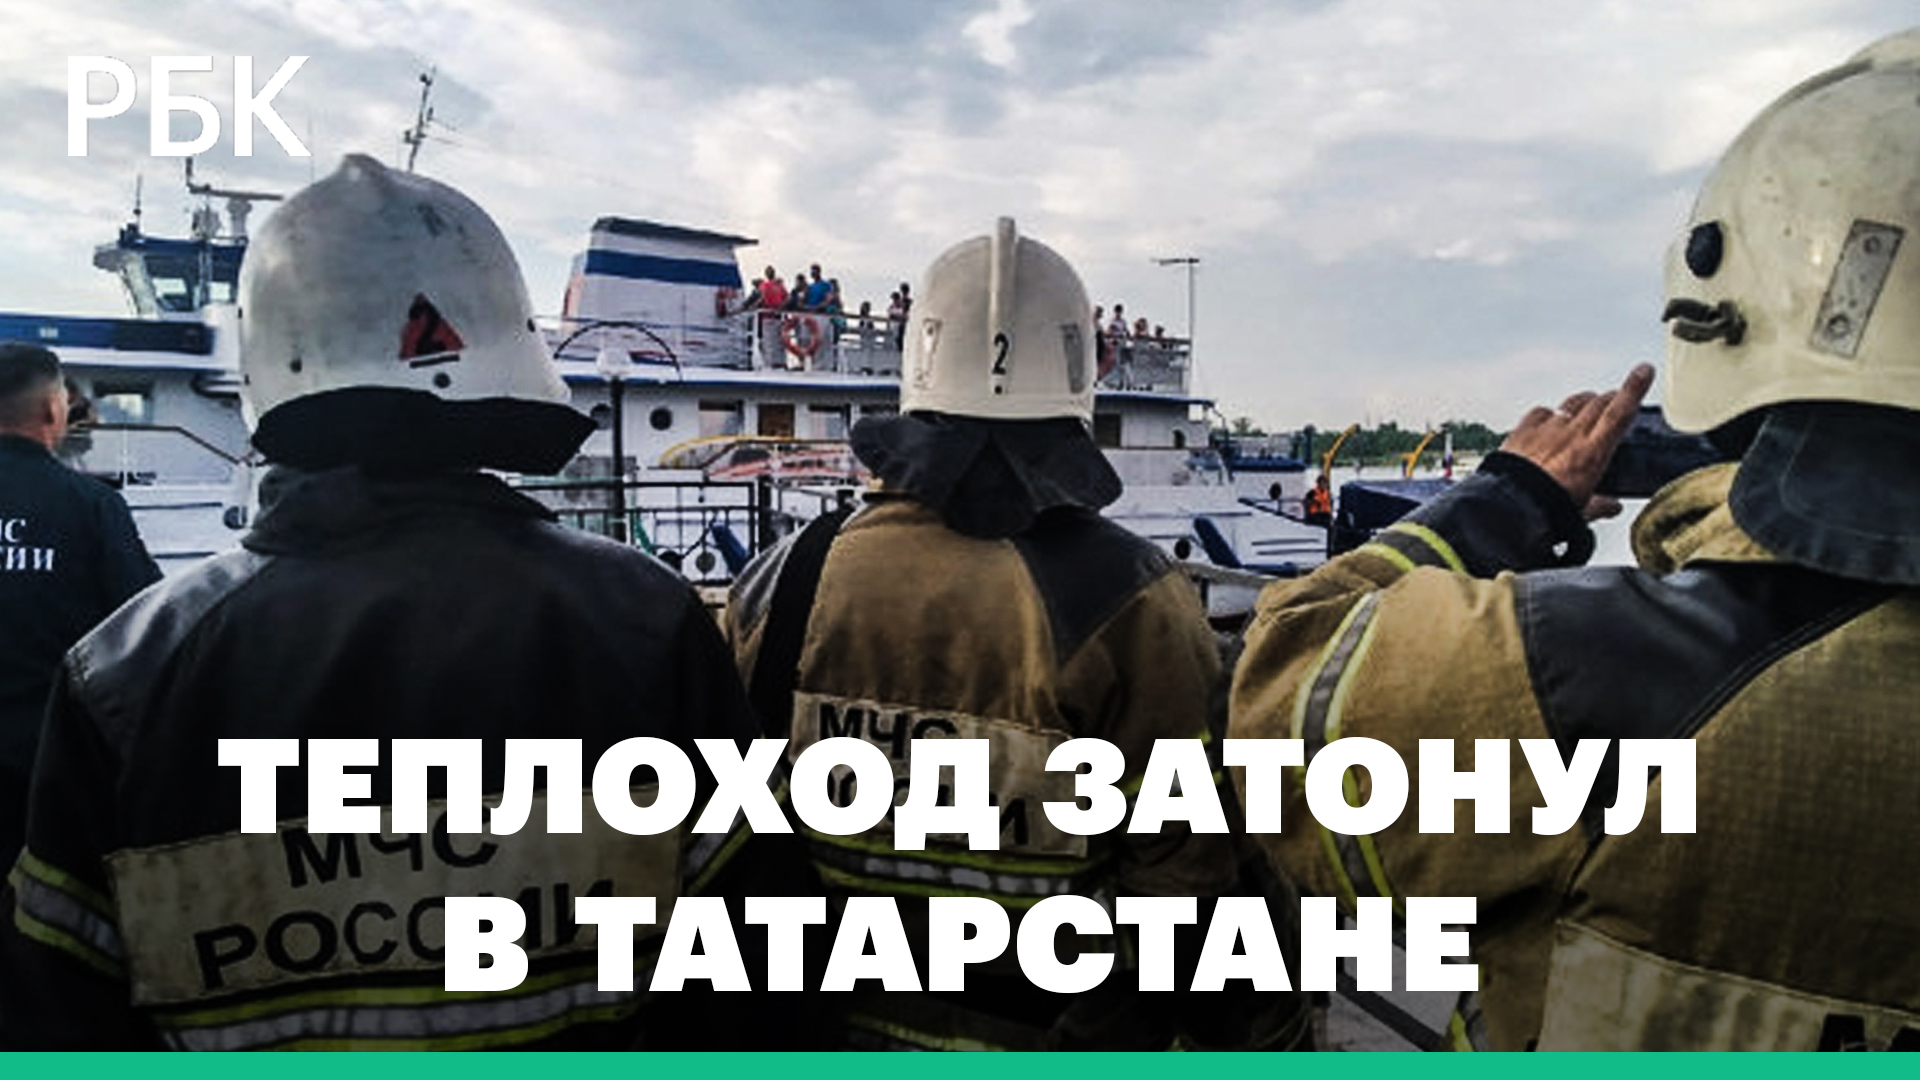 В Татарстане затонул теплоход с 34 пассажирами на борту